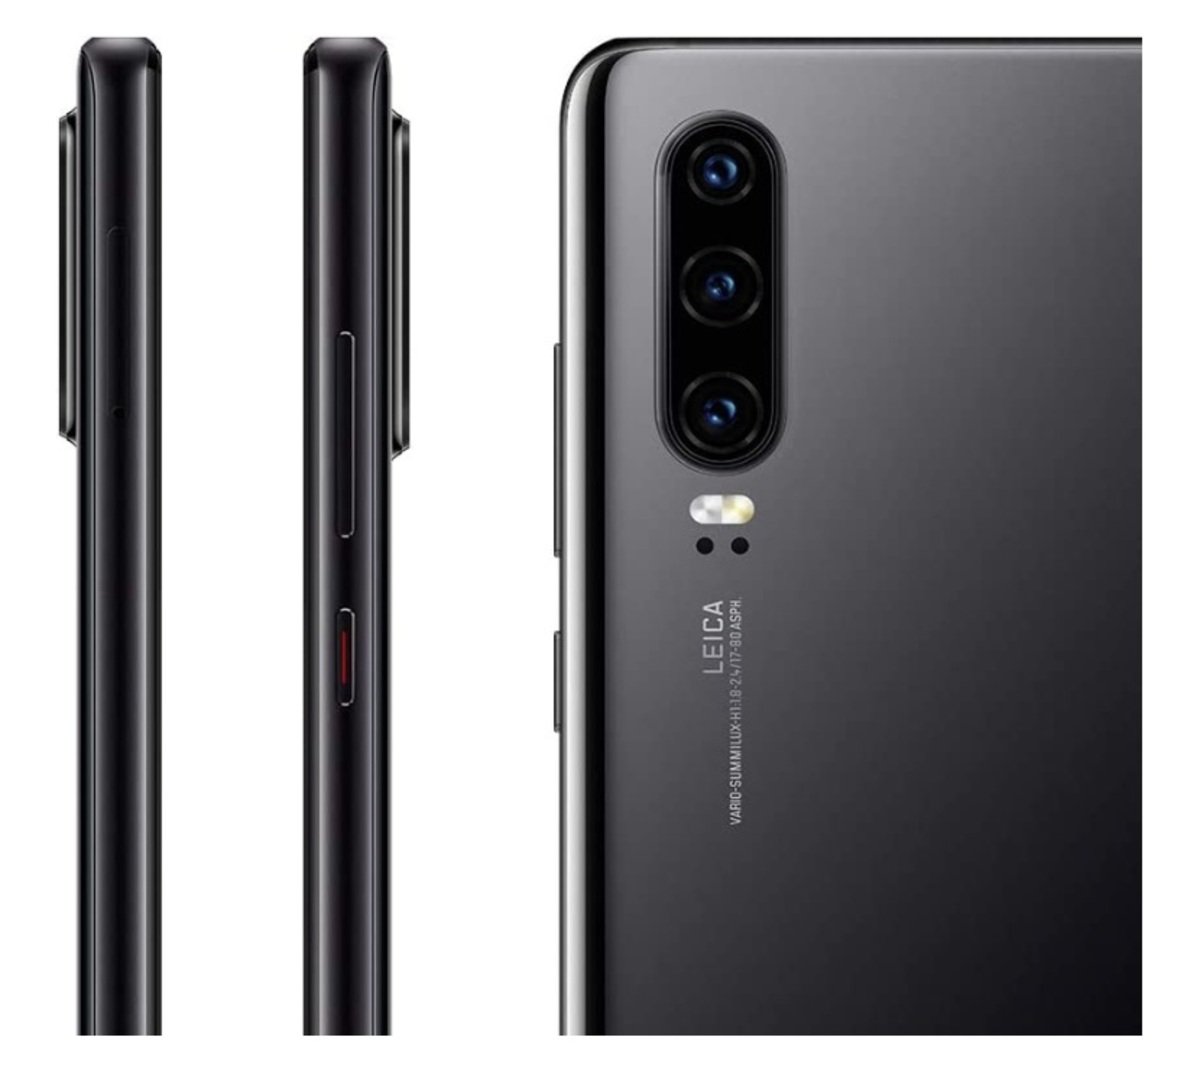 Huawei Dual SIM 6GB RAM 128GB, International Version, Black 4G, P30